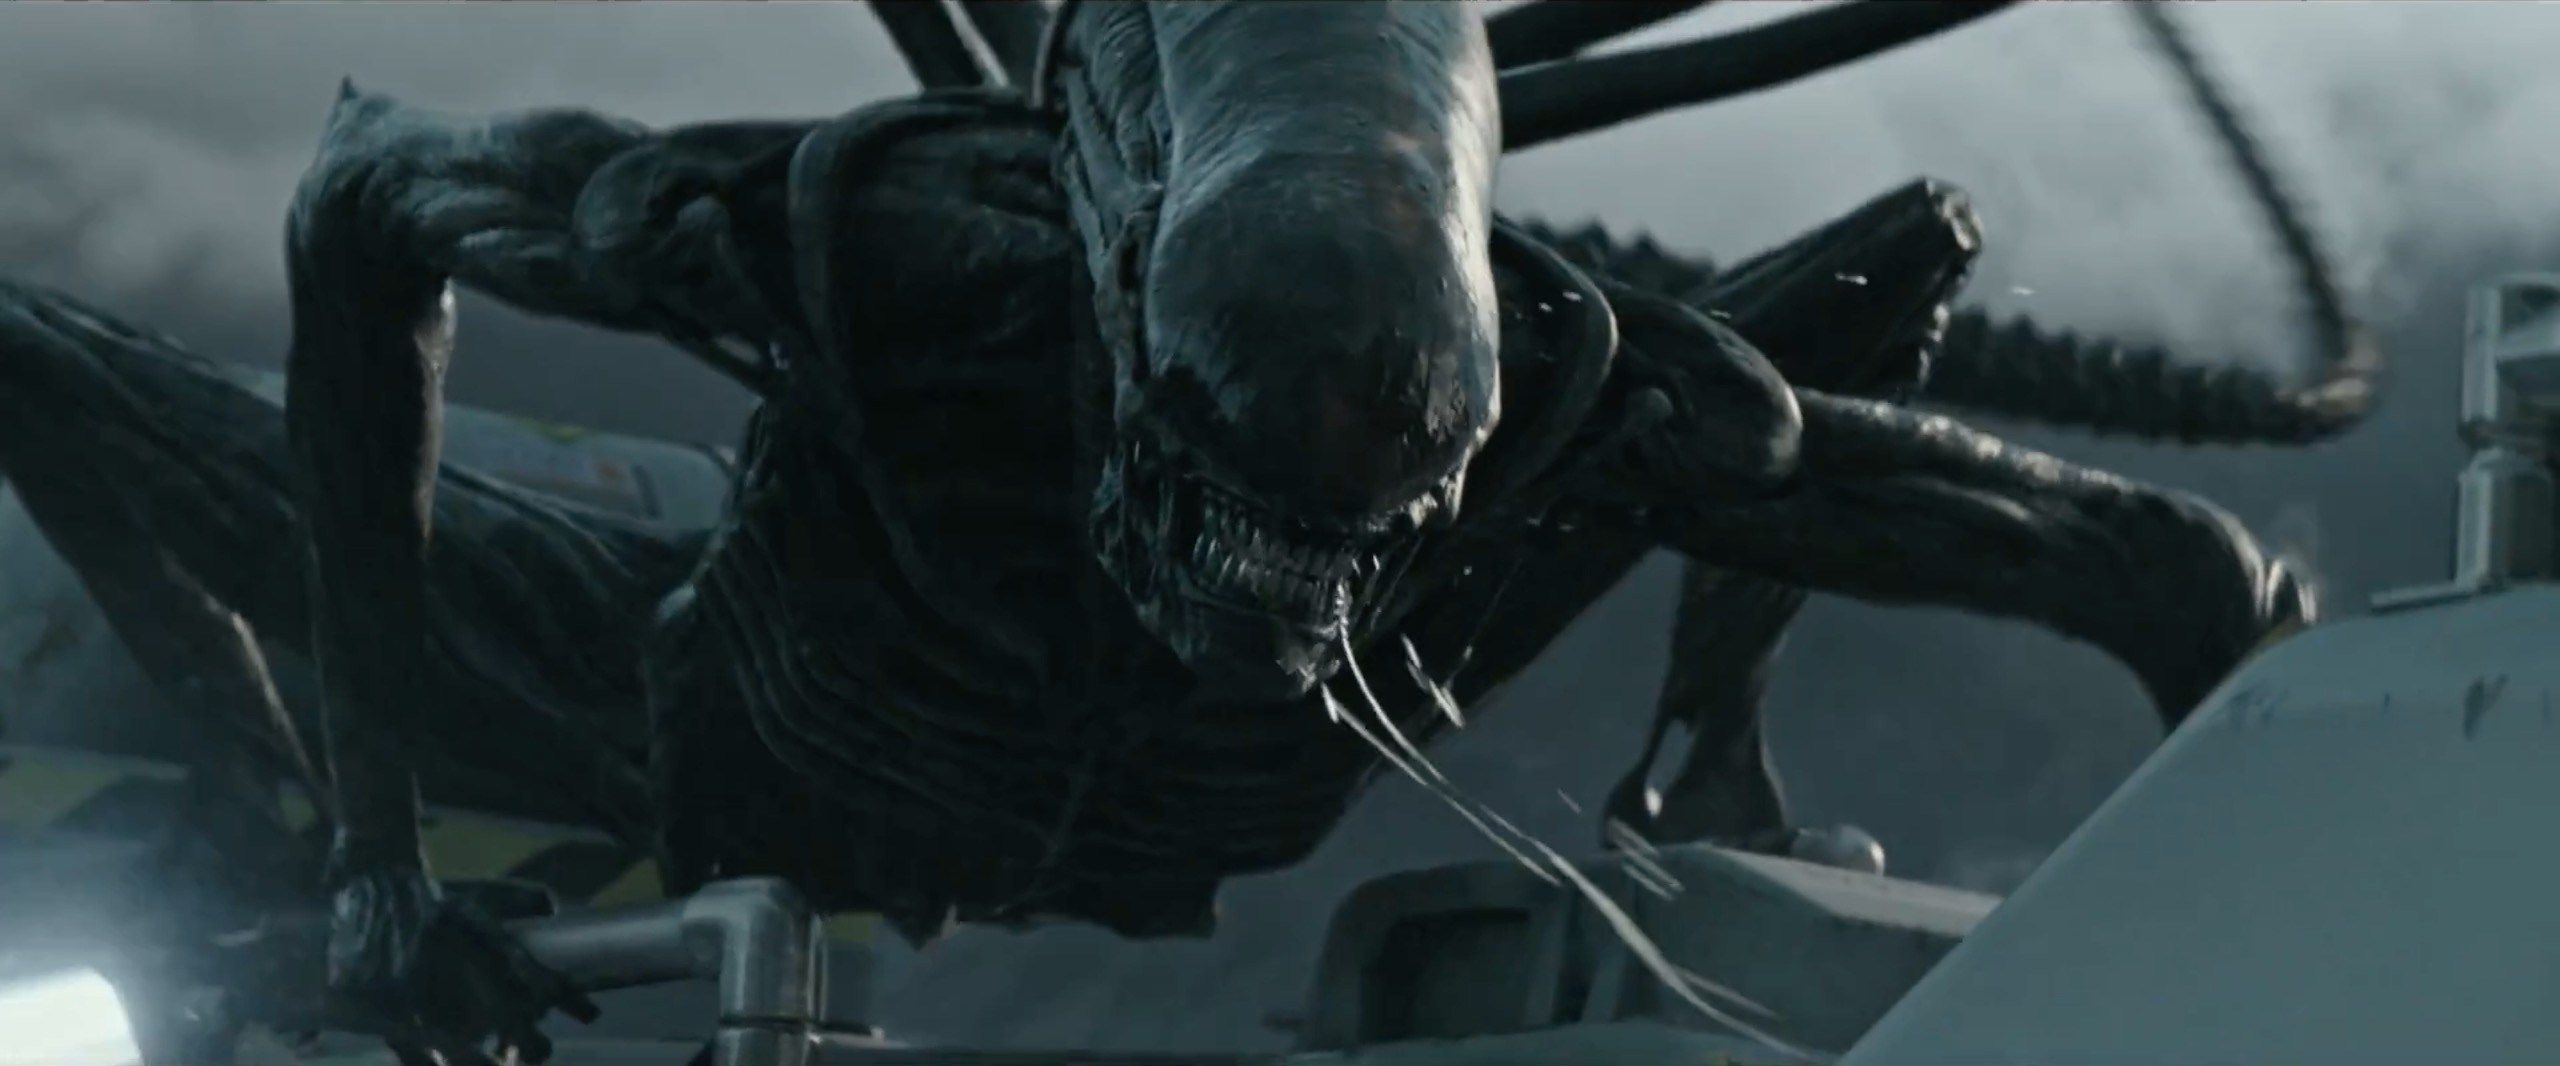 'Alien: Covenant' bied goedkoop opwinding, en die res is leeg